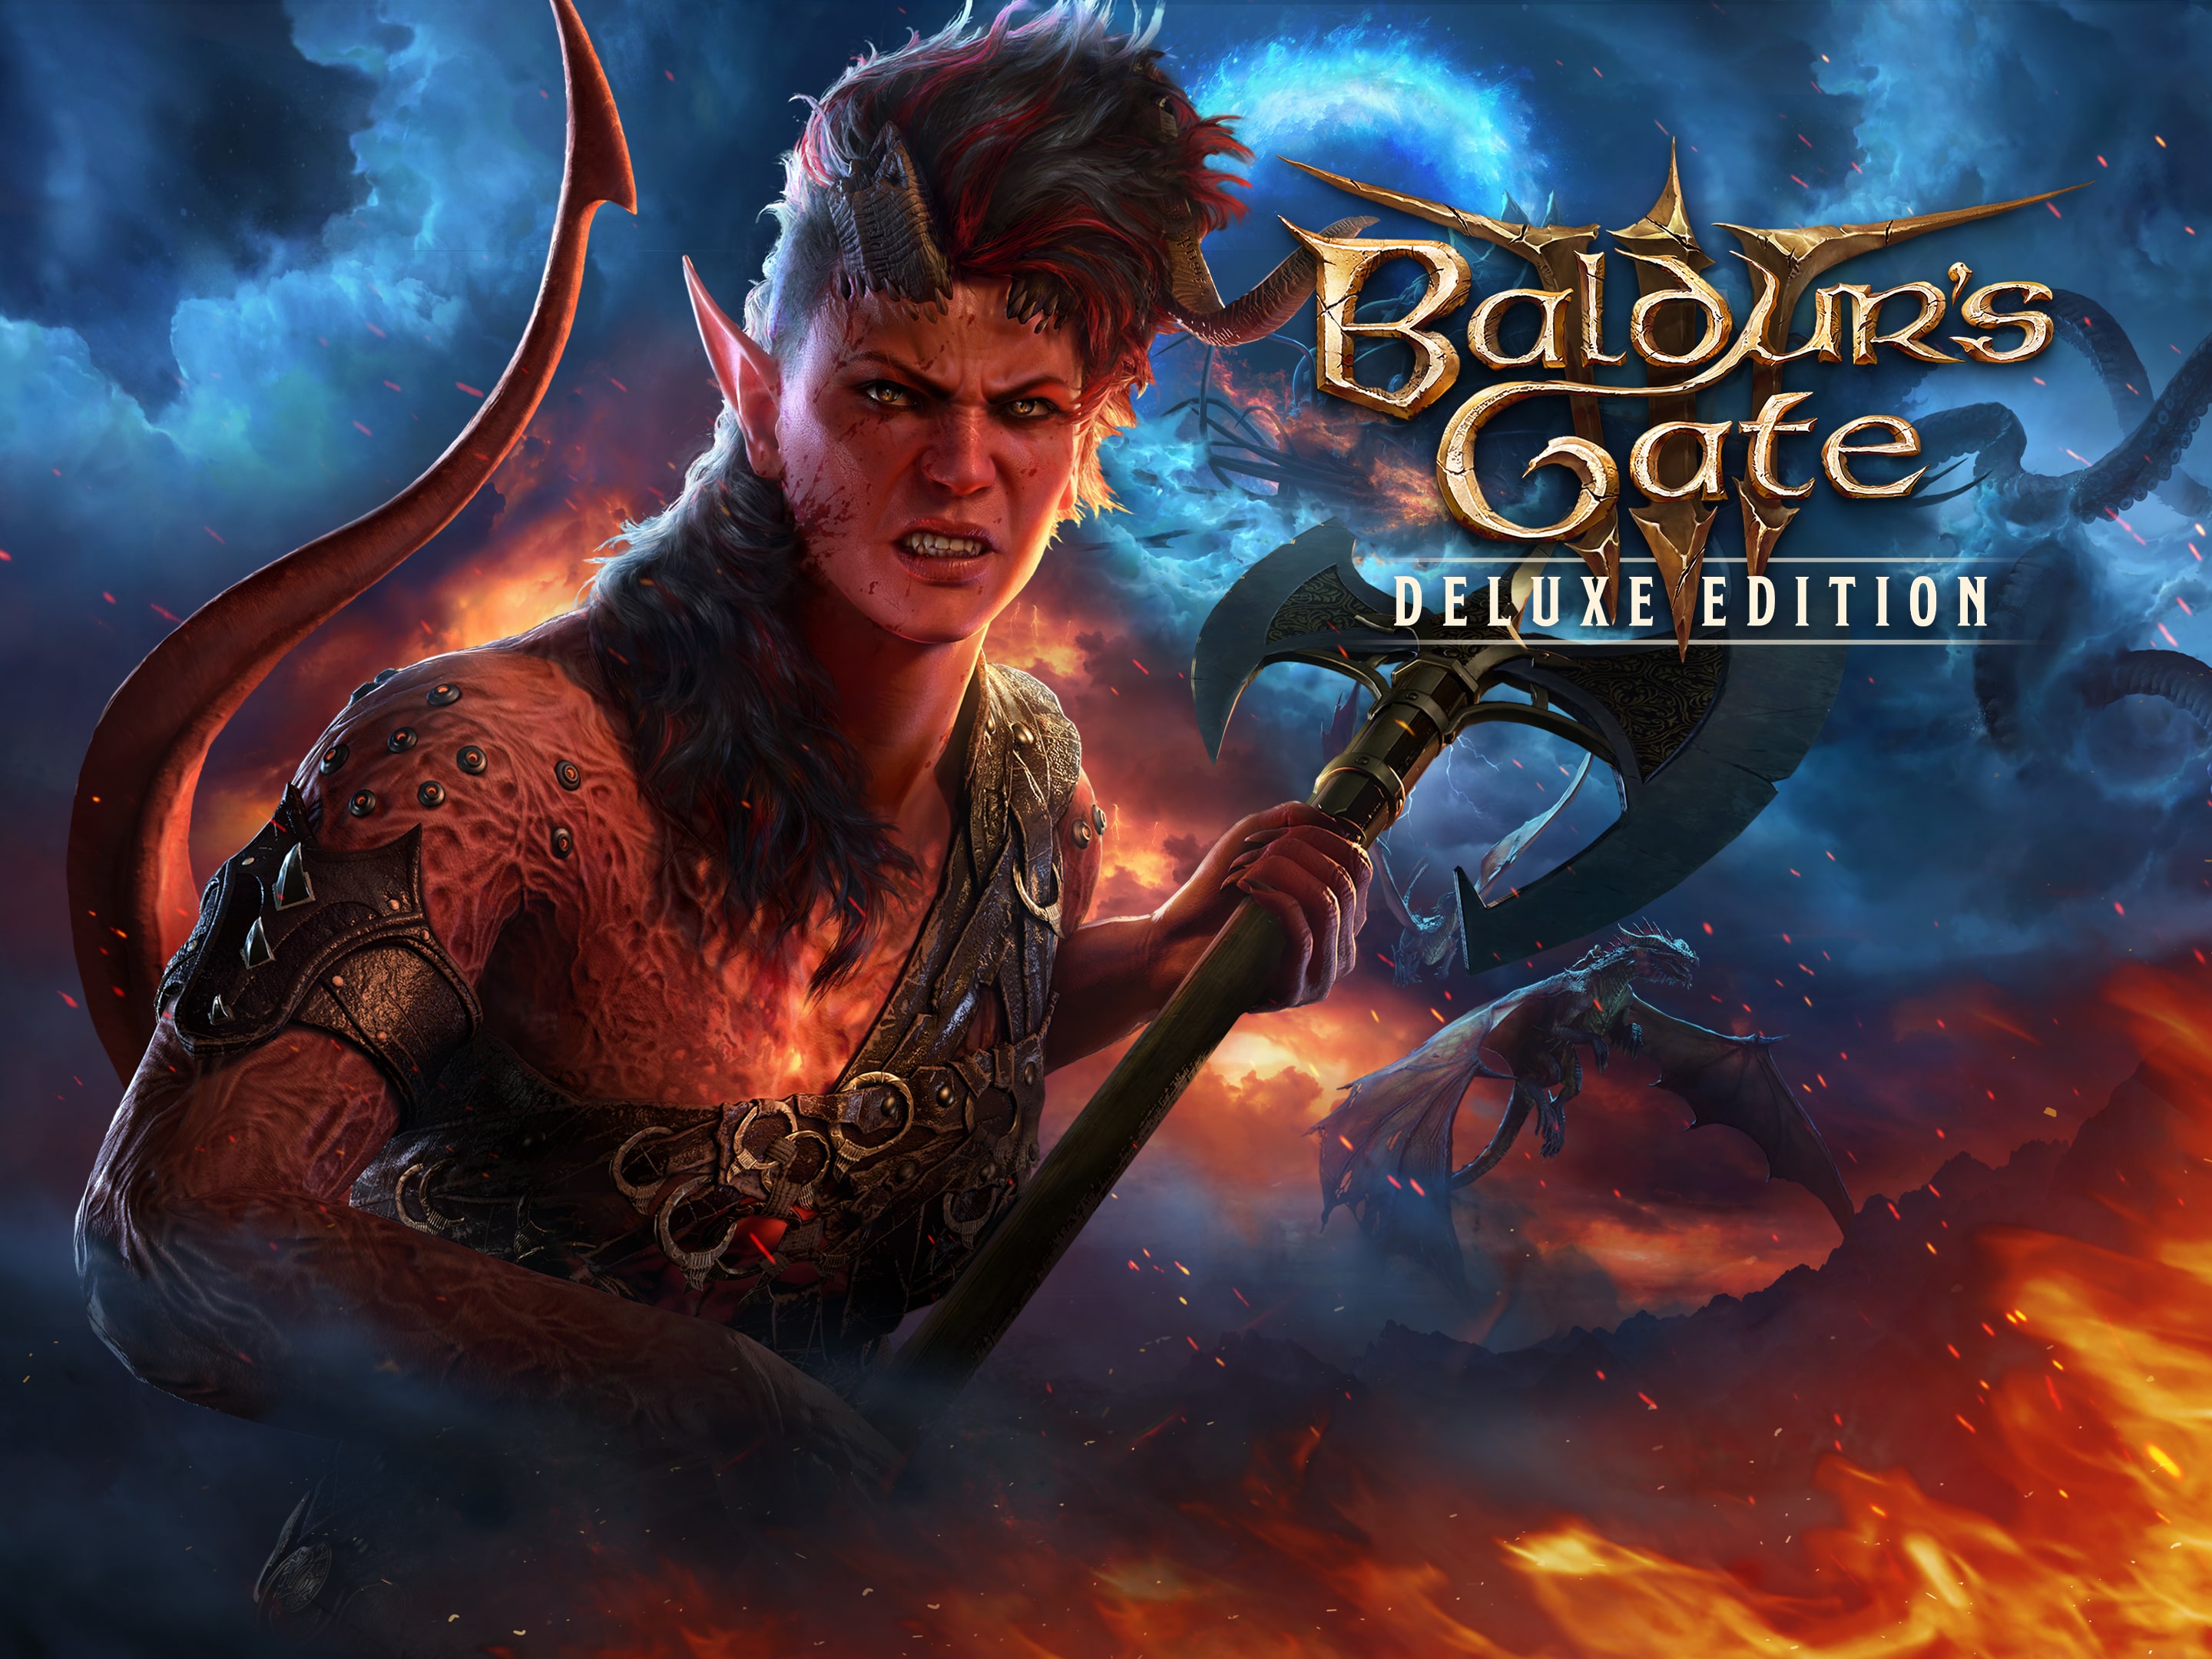 Baldur's Gate 3 – PS5 Games